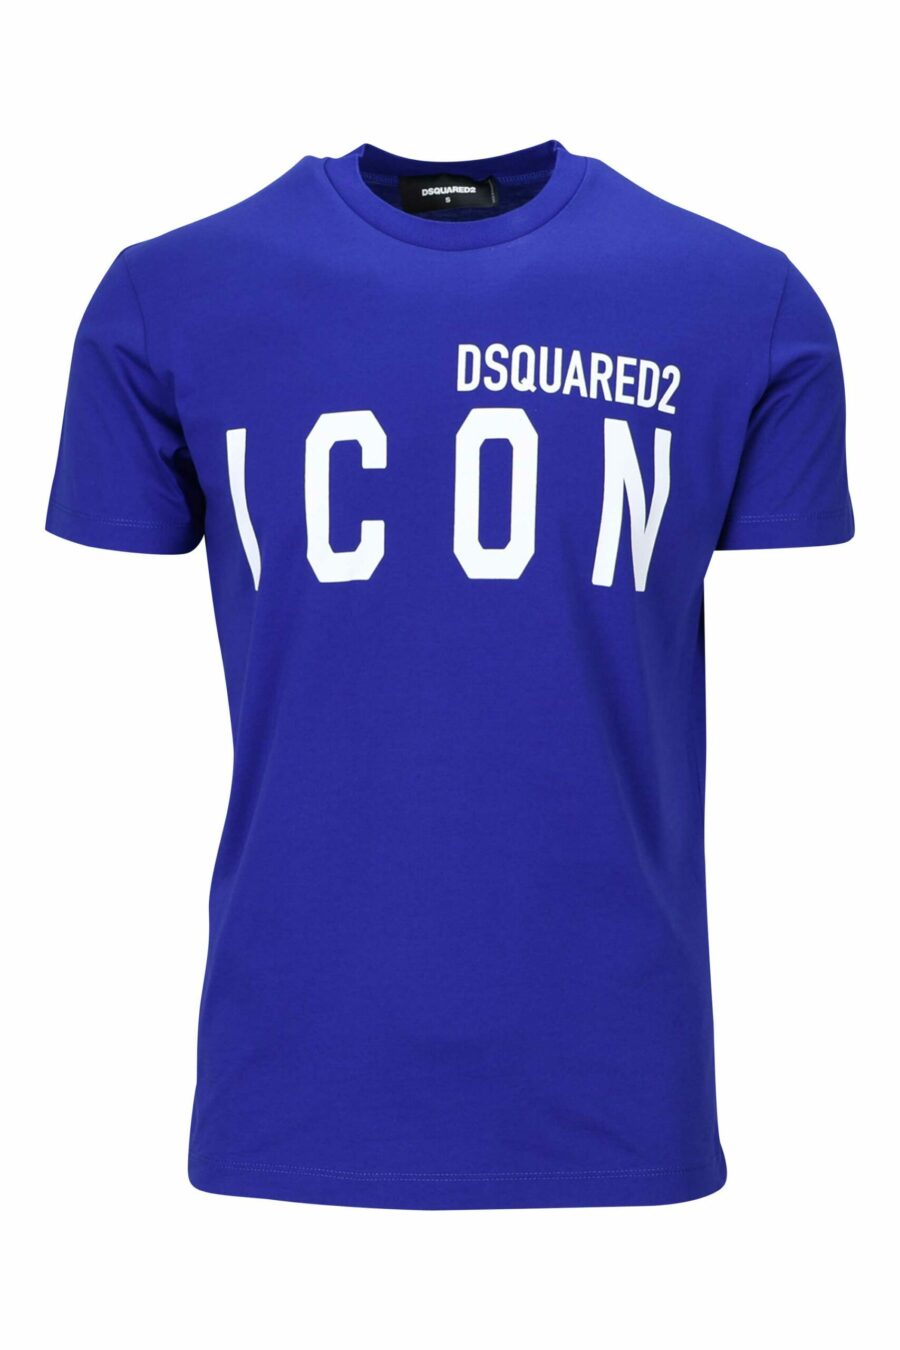 Elektrisch blaues T-Shirt mit weißem "Icon" Maxilogo - 8054148035525 skaliert